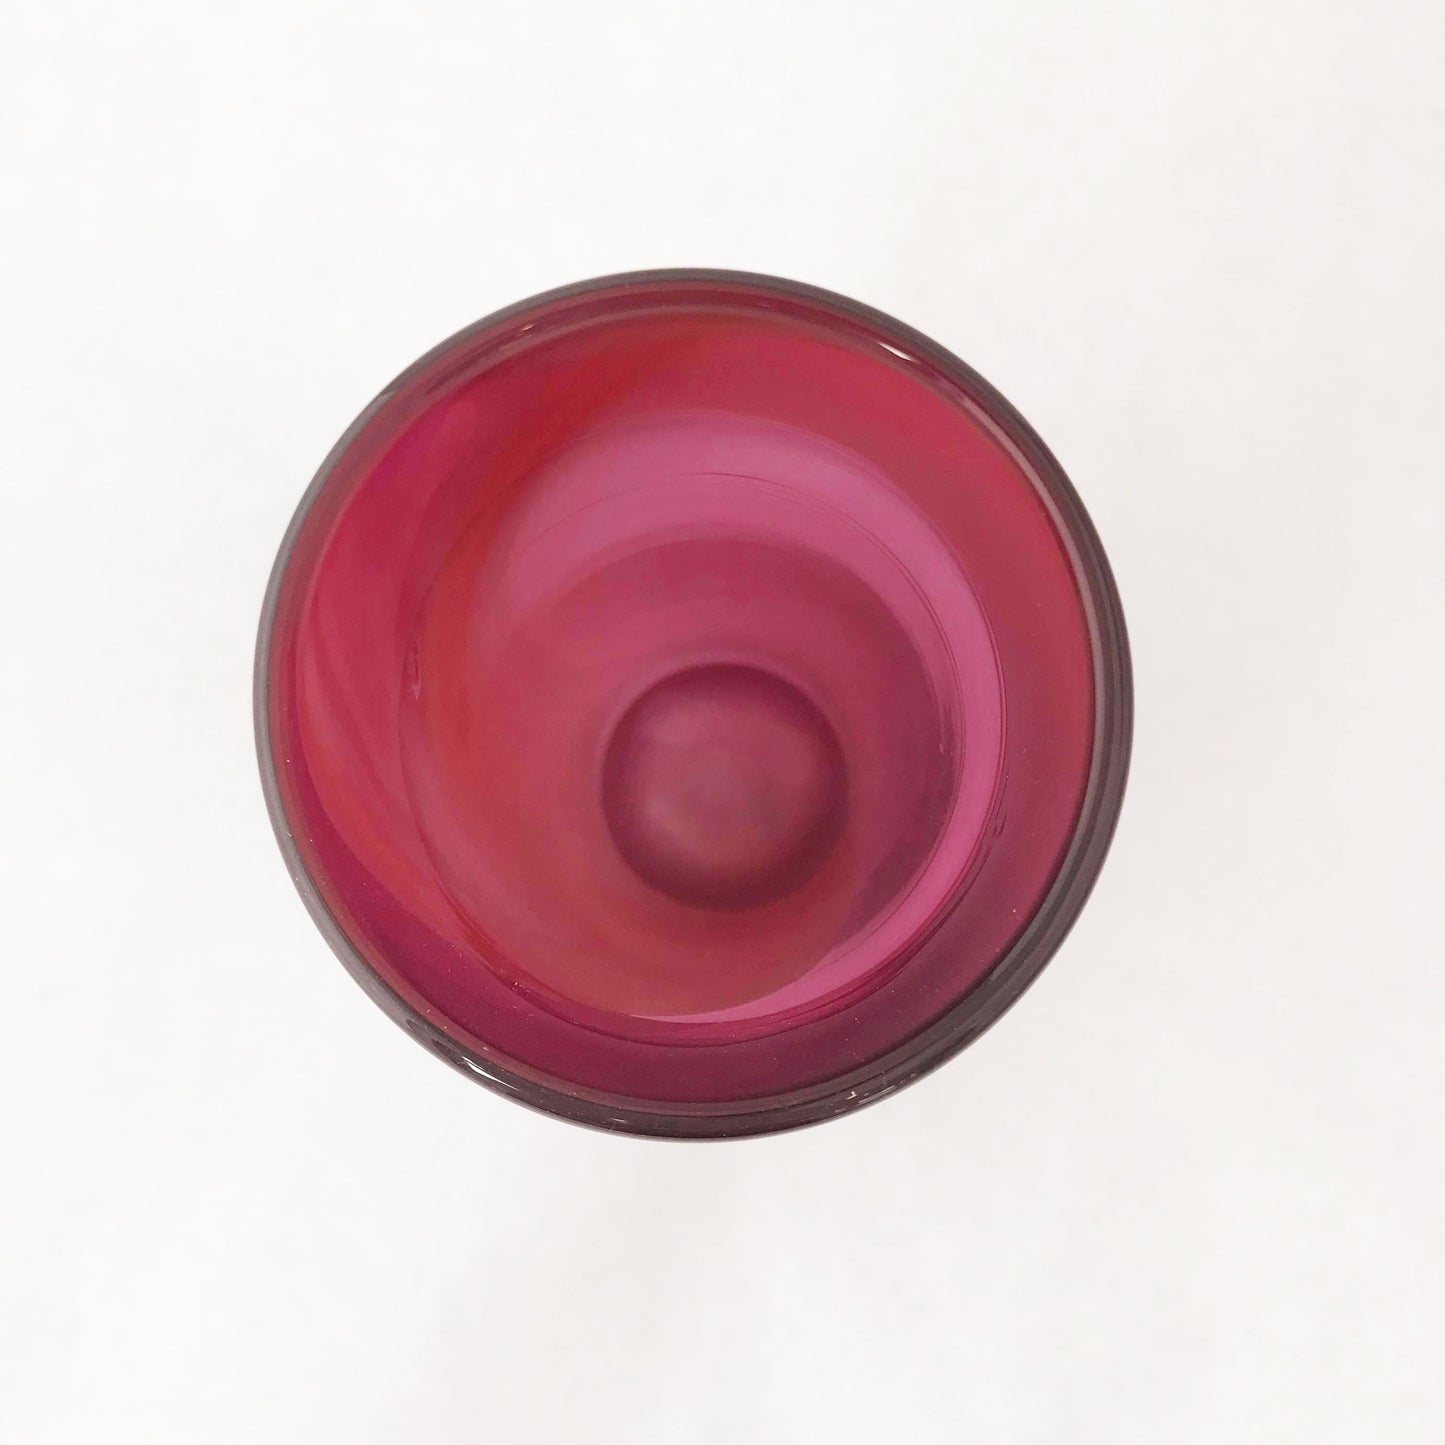 Cylinder Vase- Deep Red/Wine Red